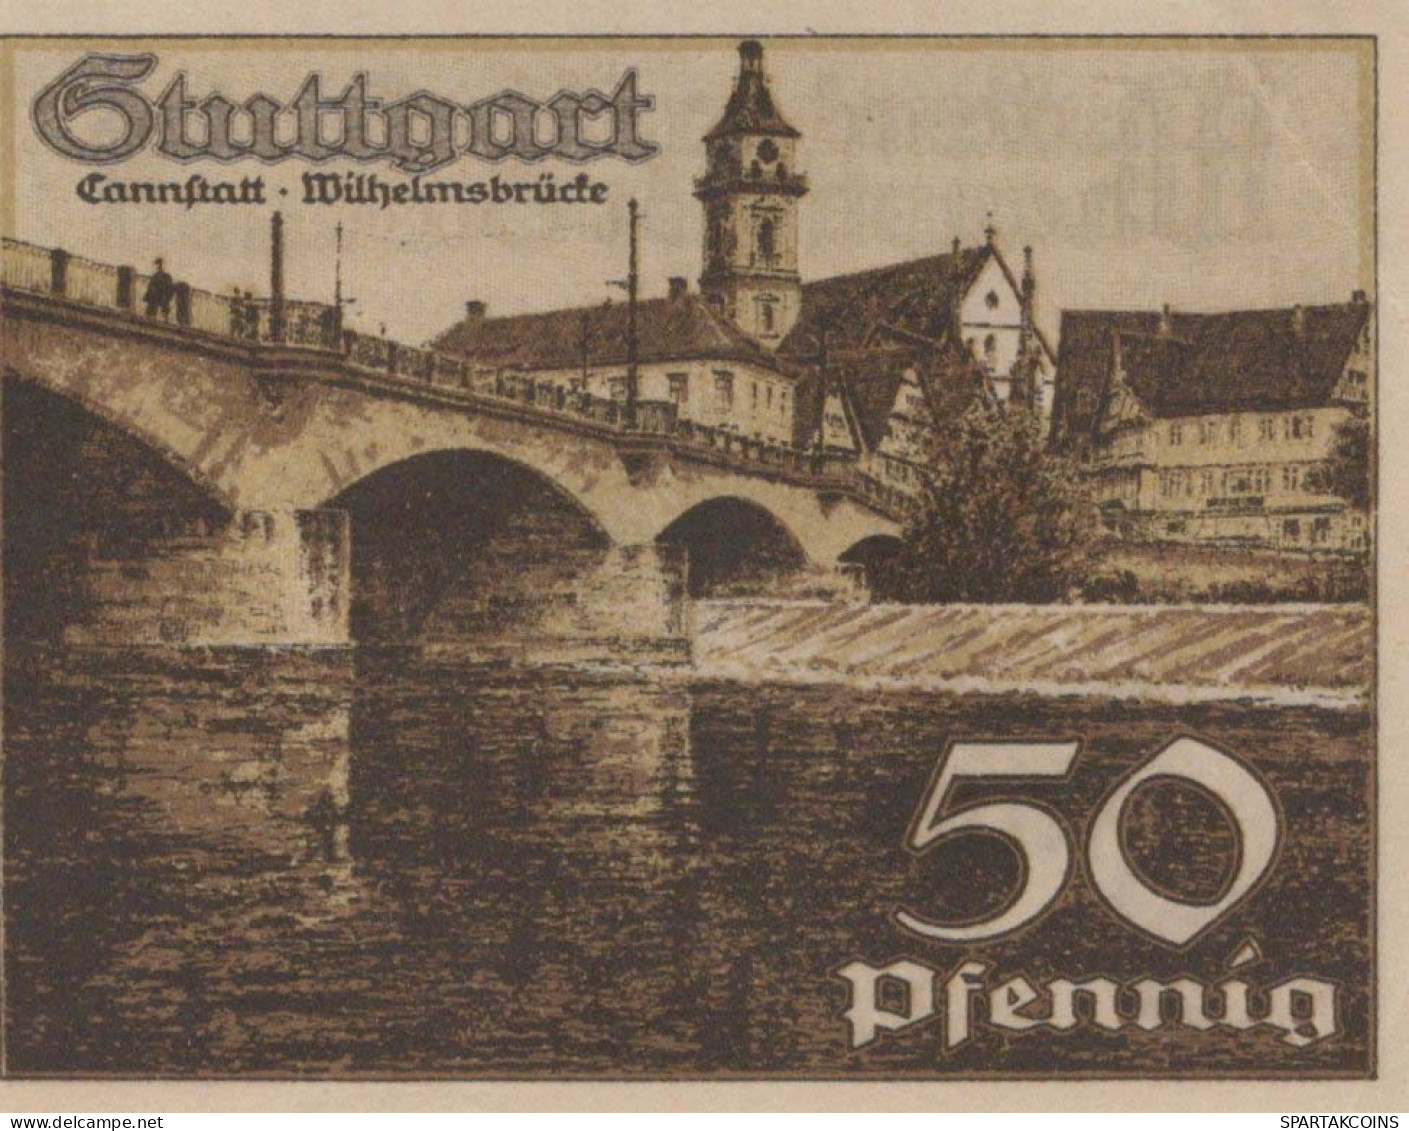 50 PFENNIG 1921 Stadt STUTTGART Württemberg UNC DEUTSCHLAND Notgeld #PC422 - [11] Emissions Locales